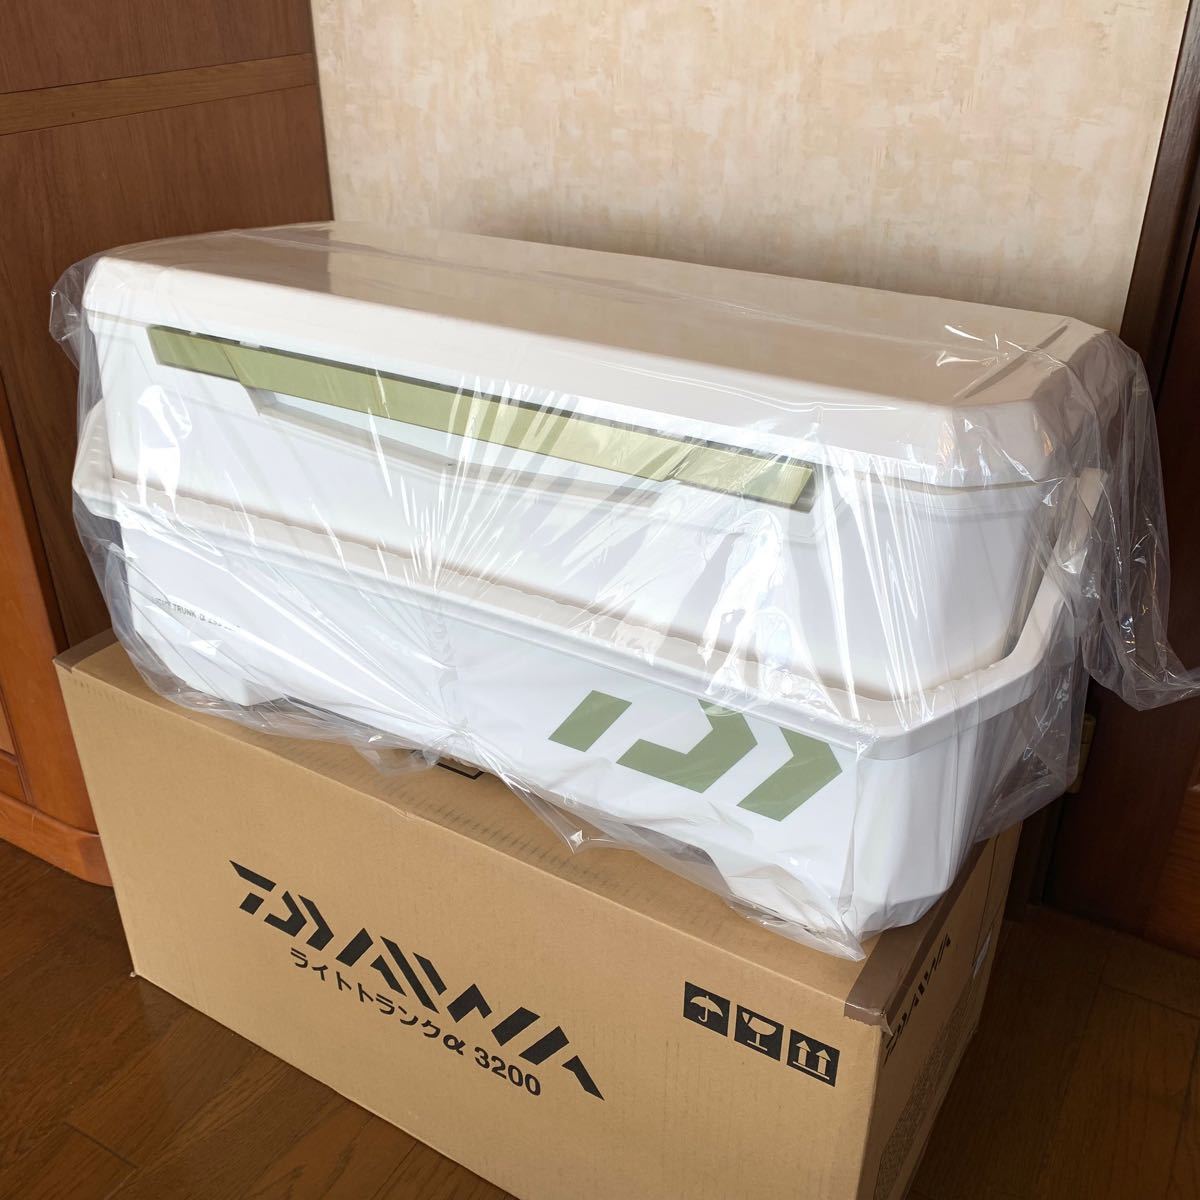 ダイワ ライトトランクαZSS3200 売れ筋がひ贈り物 acsenda.com